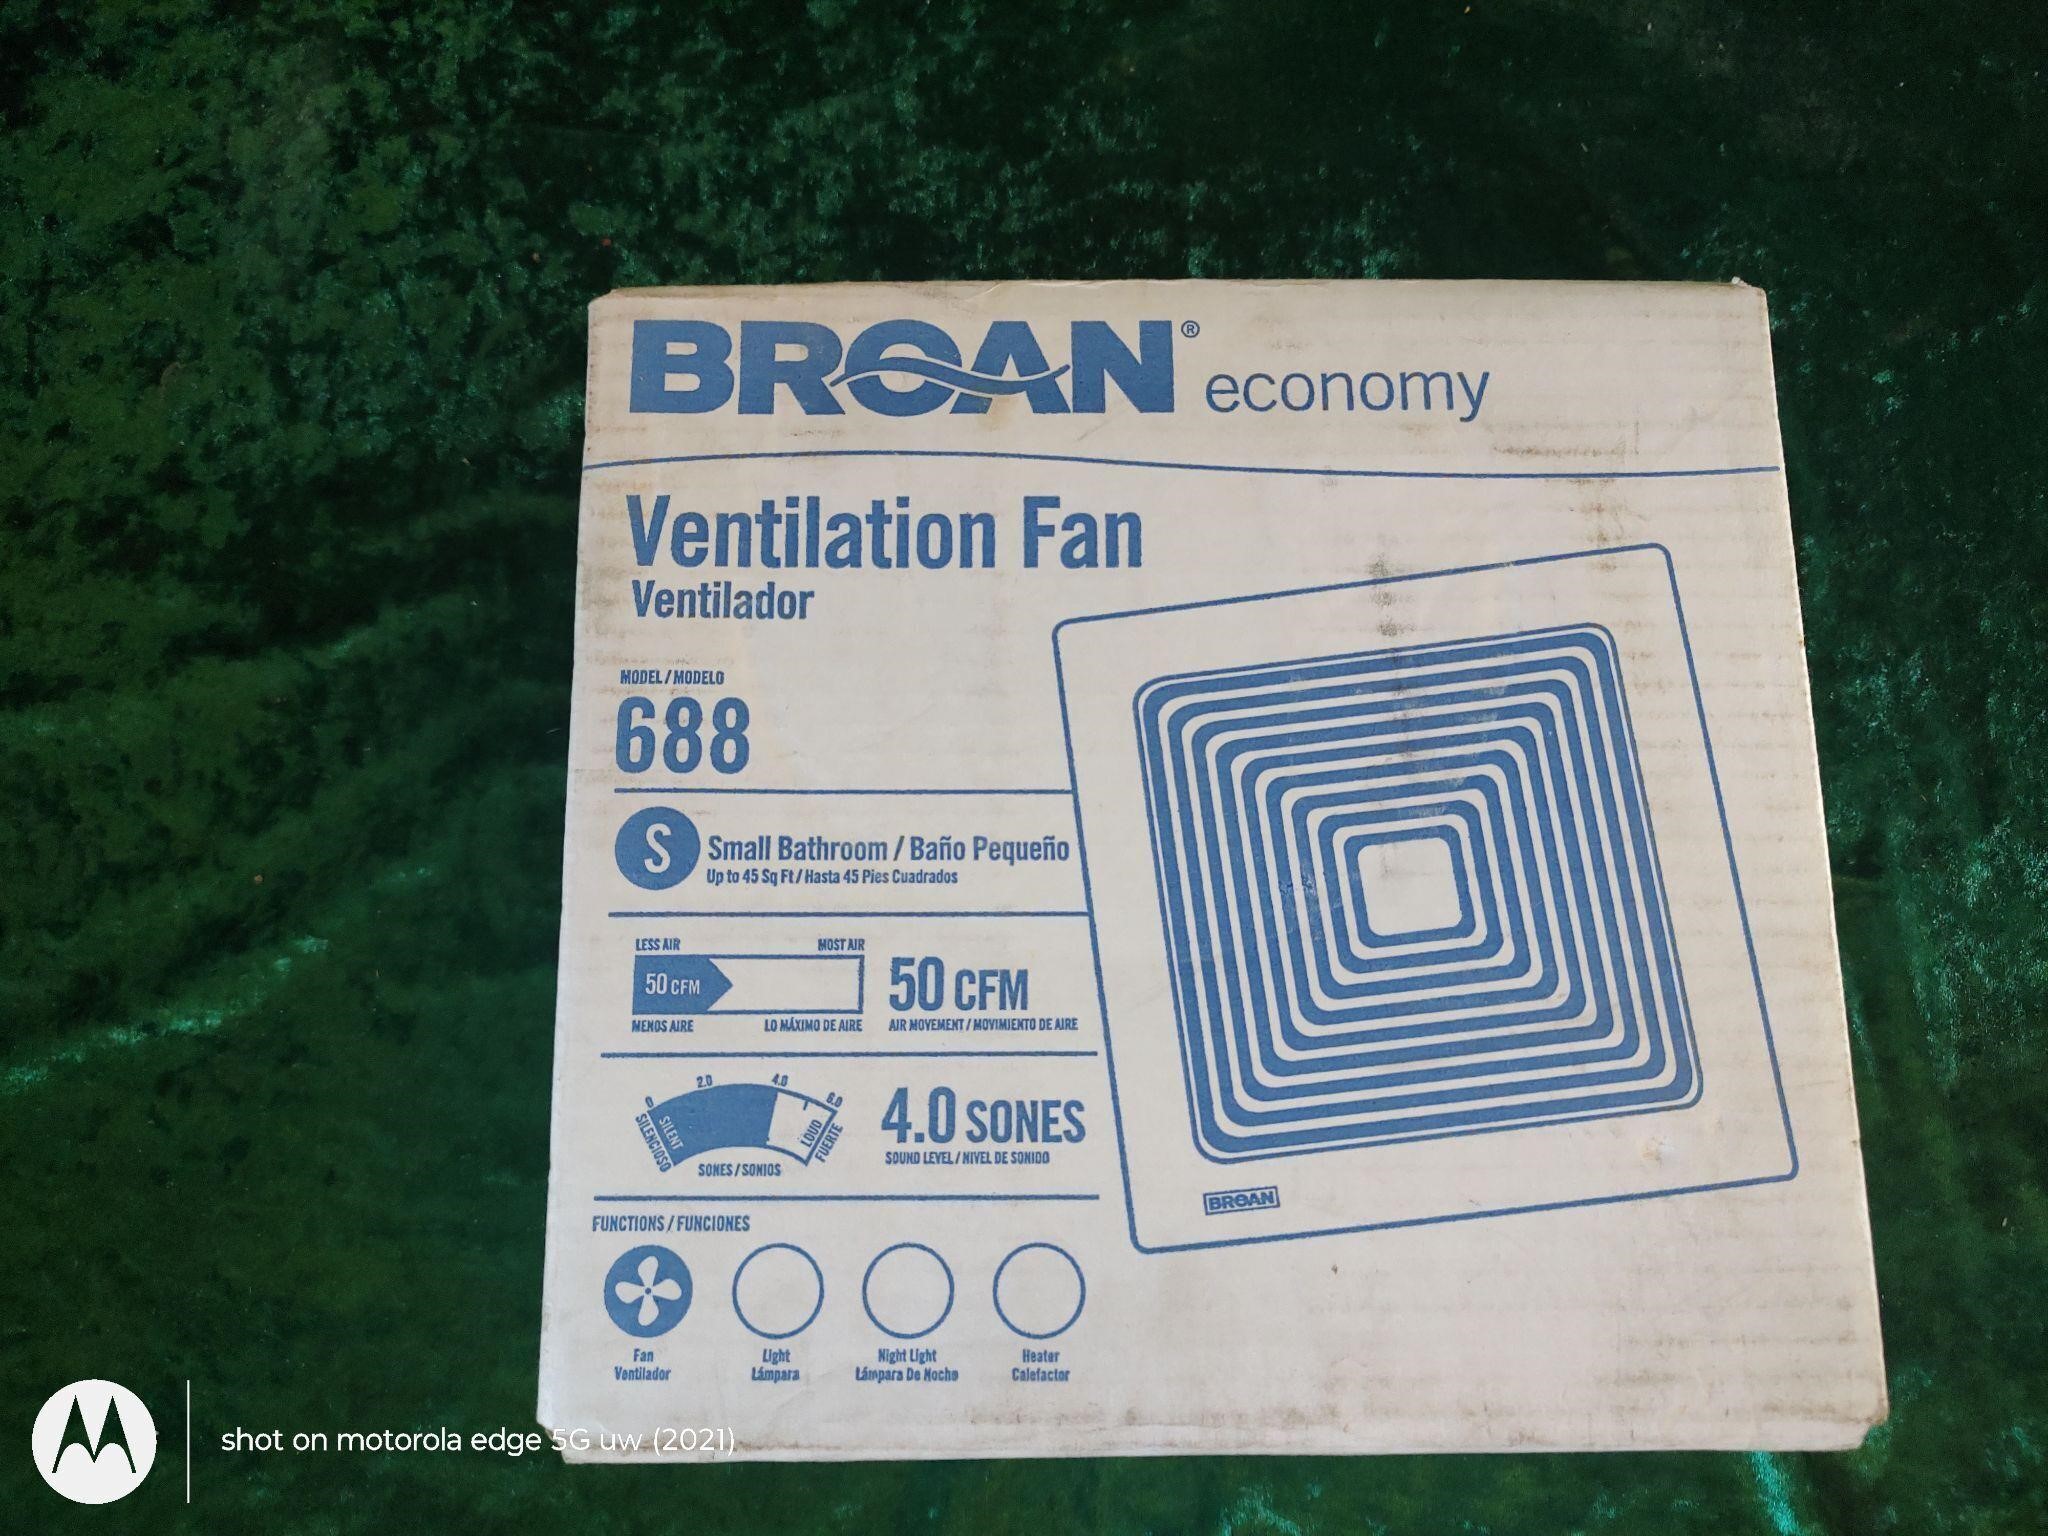 Broan economy ventilation fan model 688